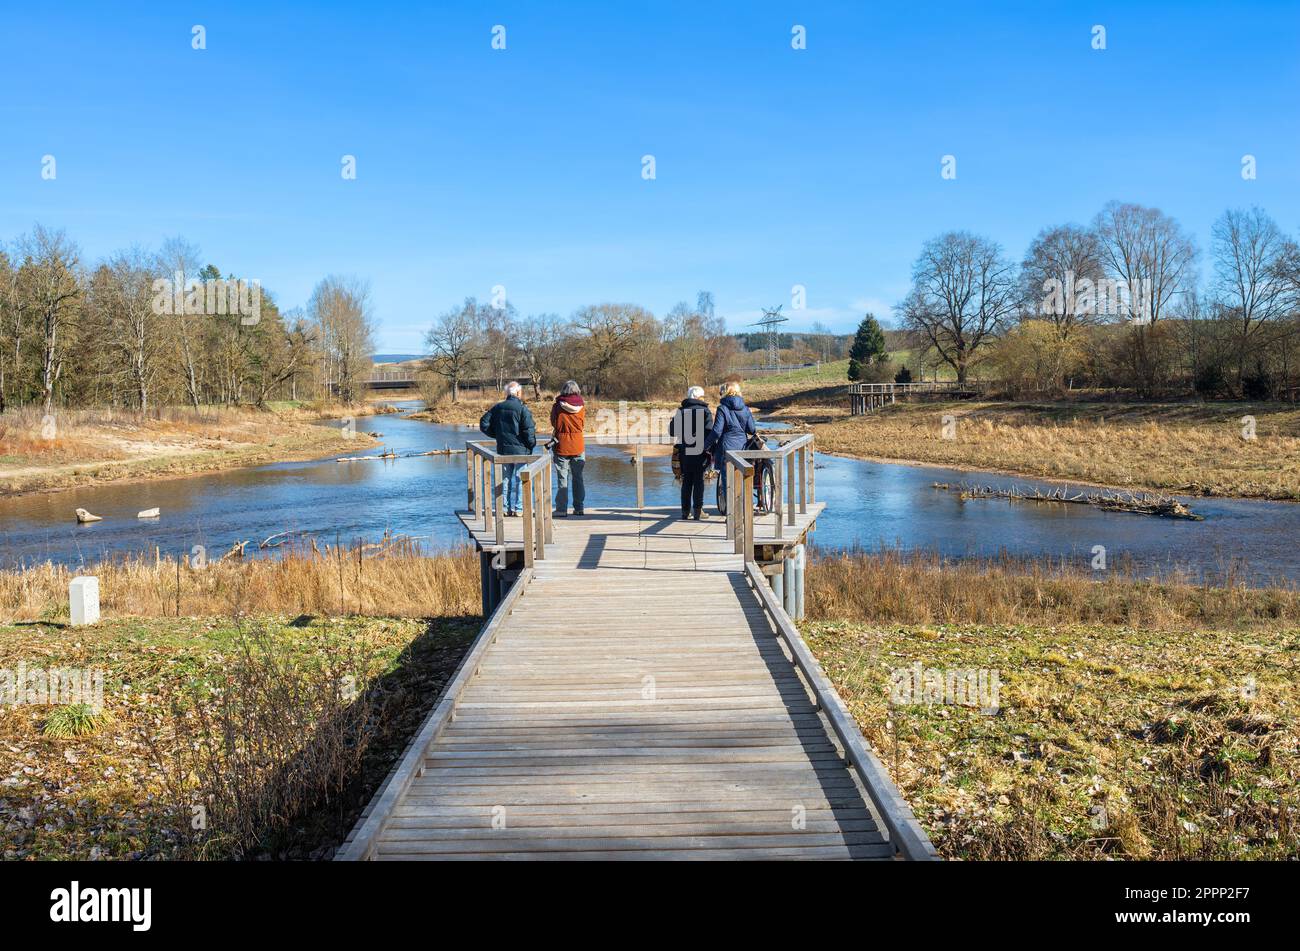 Turisti che ammirano la confluenza dei fiumi Brigach e Breg, che costituisce l'inizio e l'origine del Danubio, il più lungo fiume europeo. Donau Foto Stock